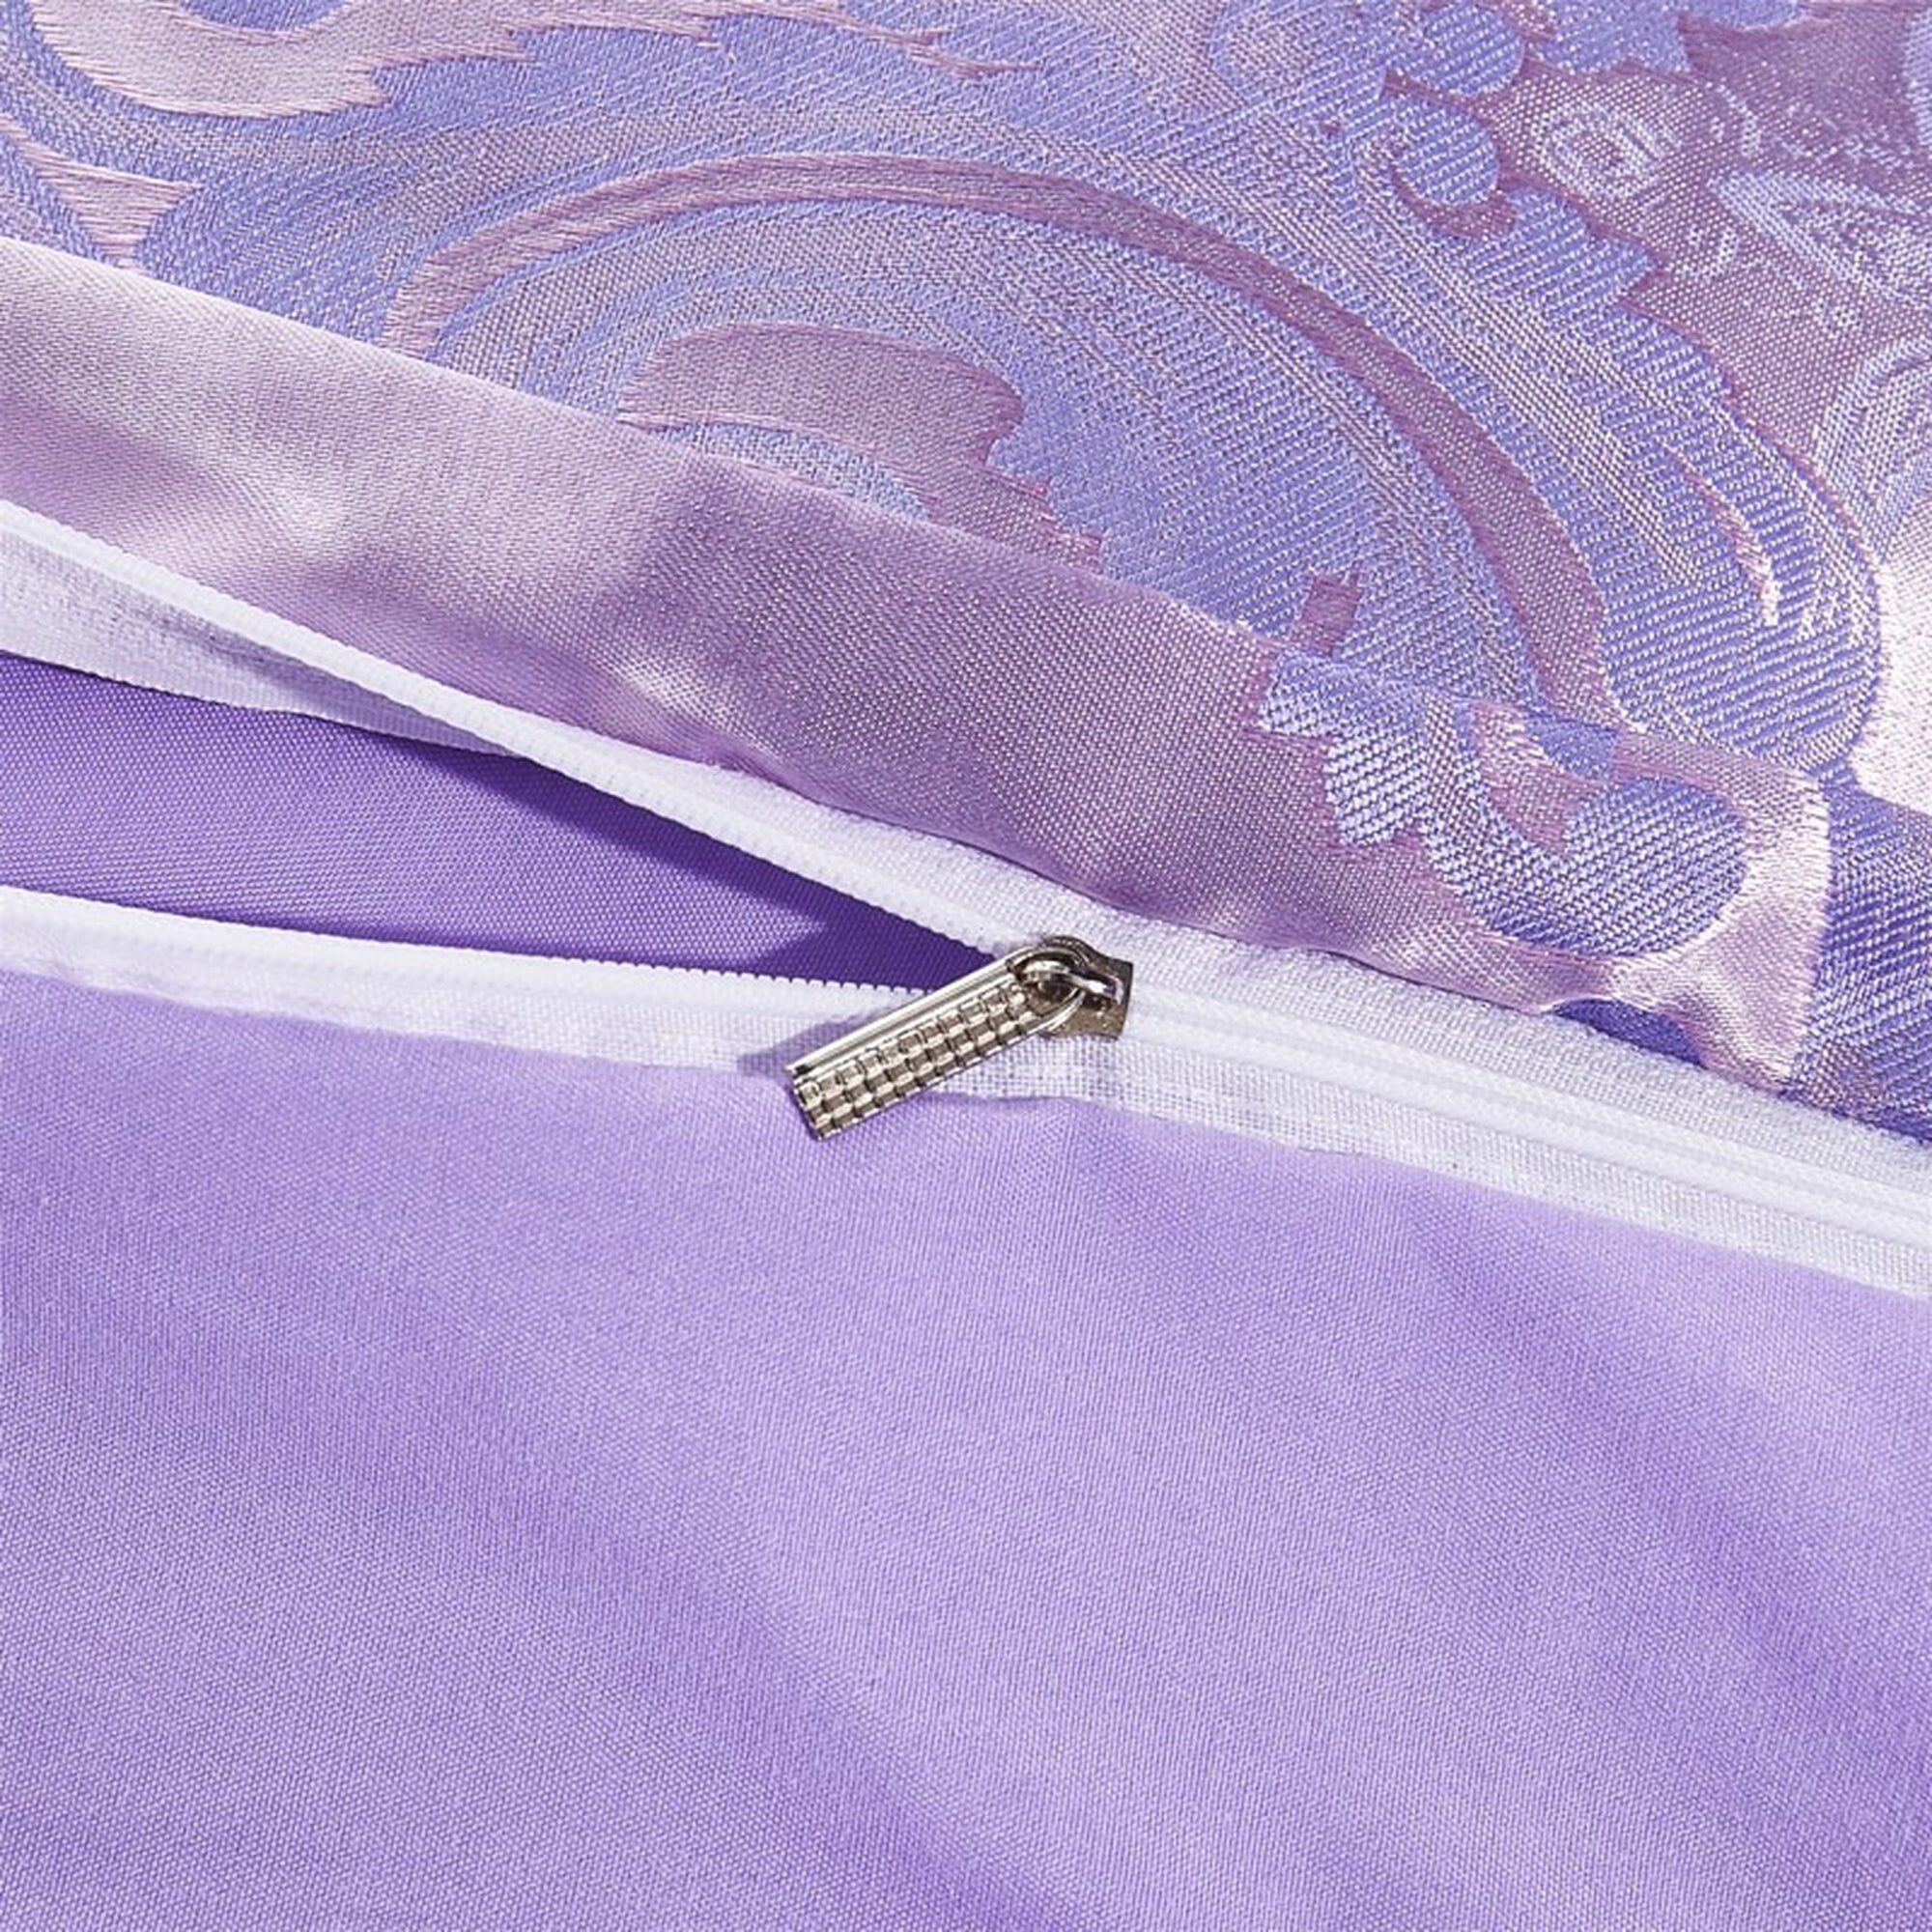 daintyduvet Luxury Lavender Purple Bedding made with Silky Jacquard Fabric, Damask Duvet Cover Set, Designer Bedding, Aesthetic Duvet King Queen Full